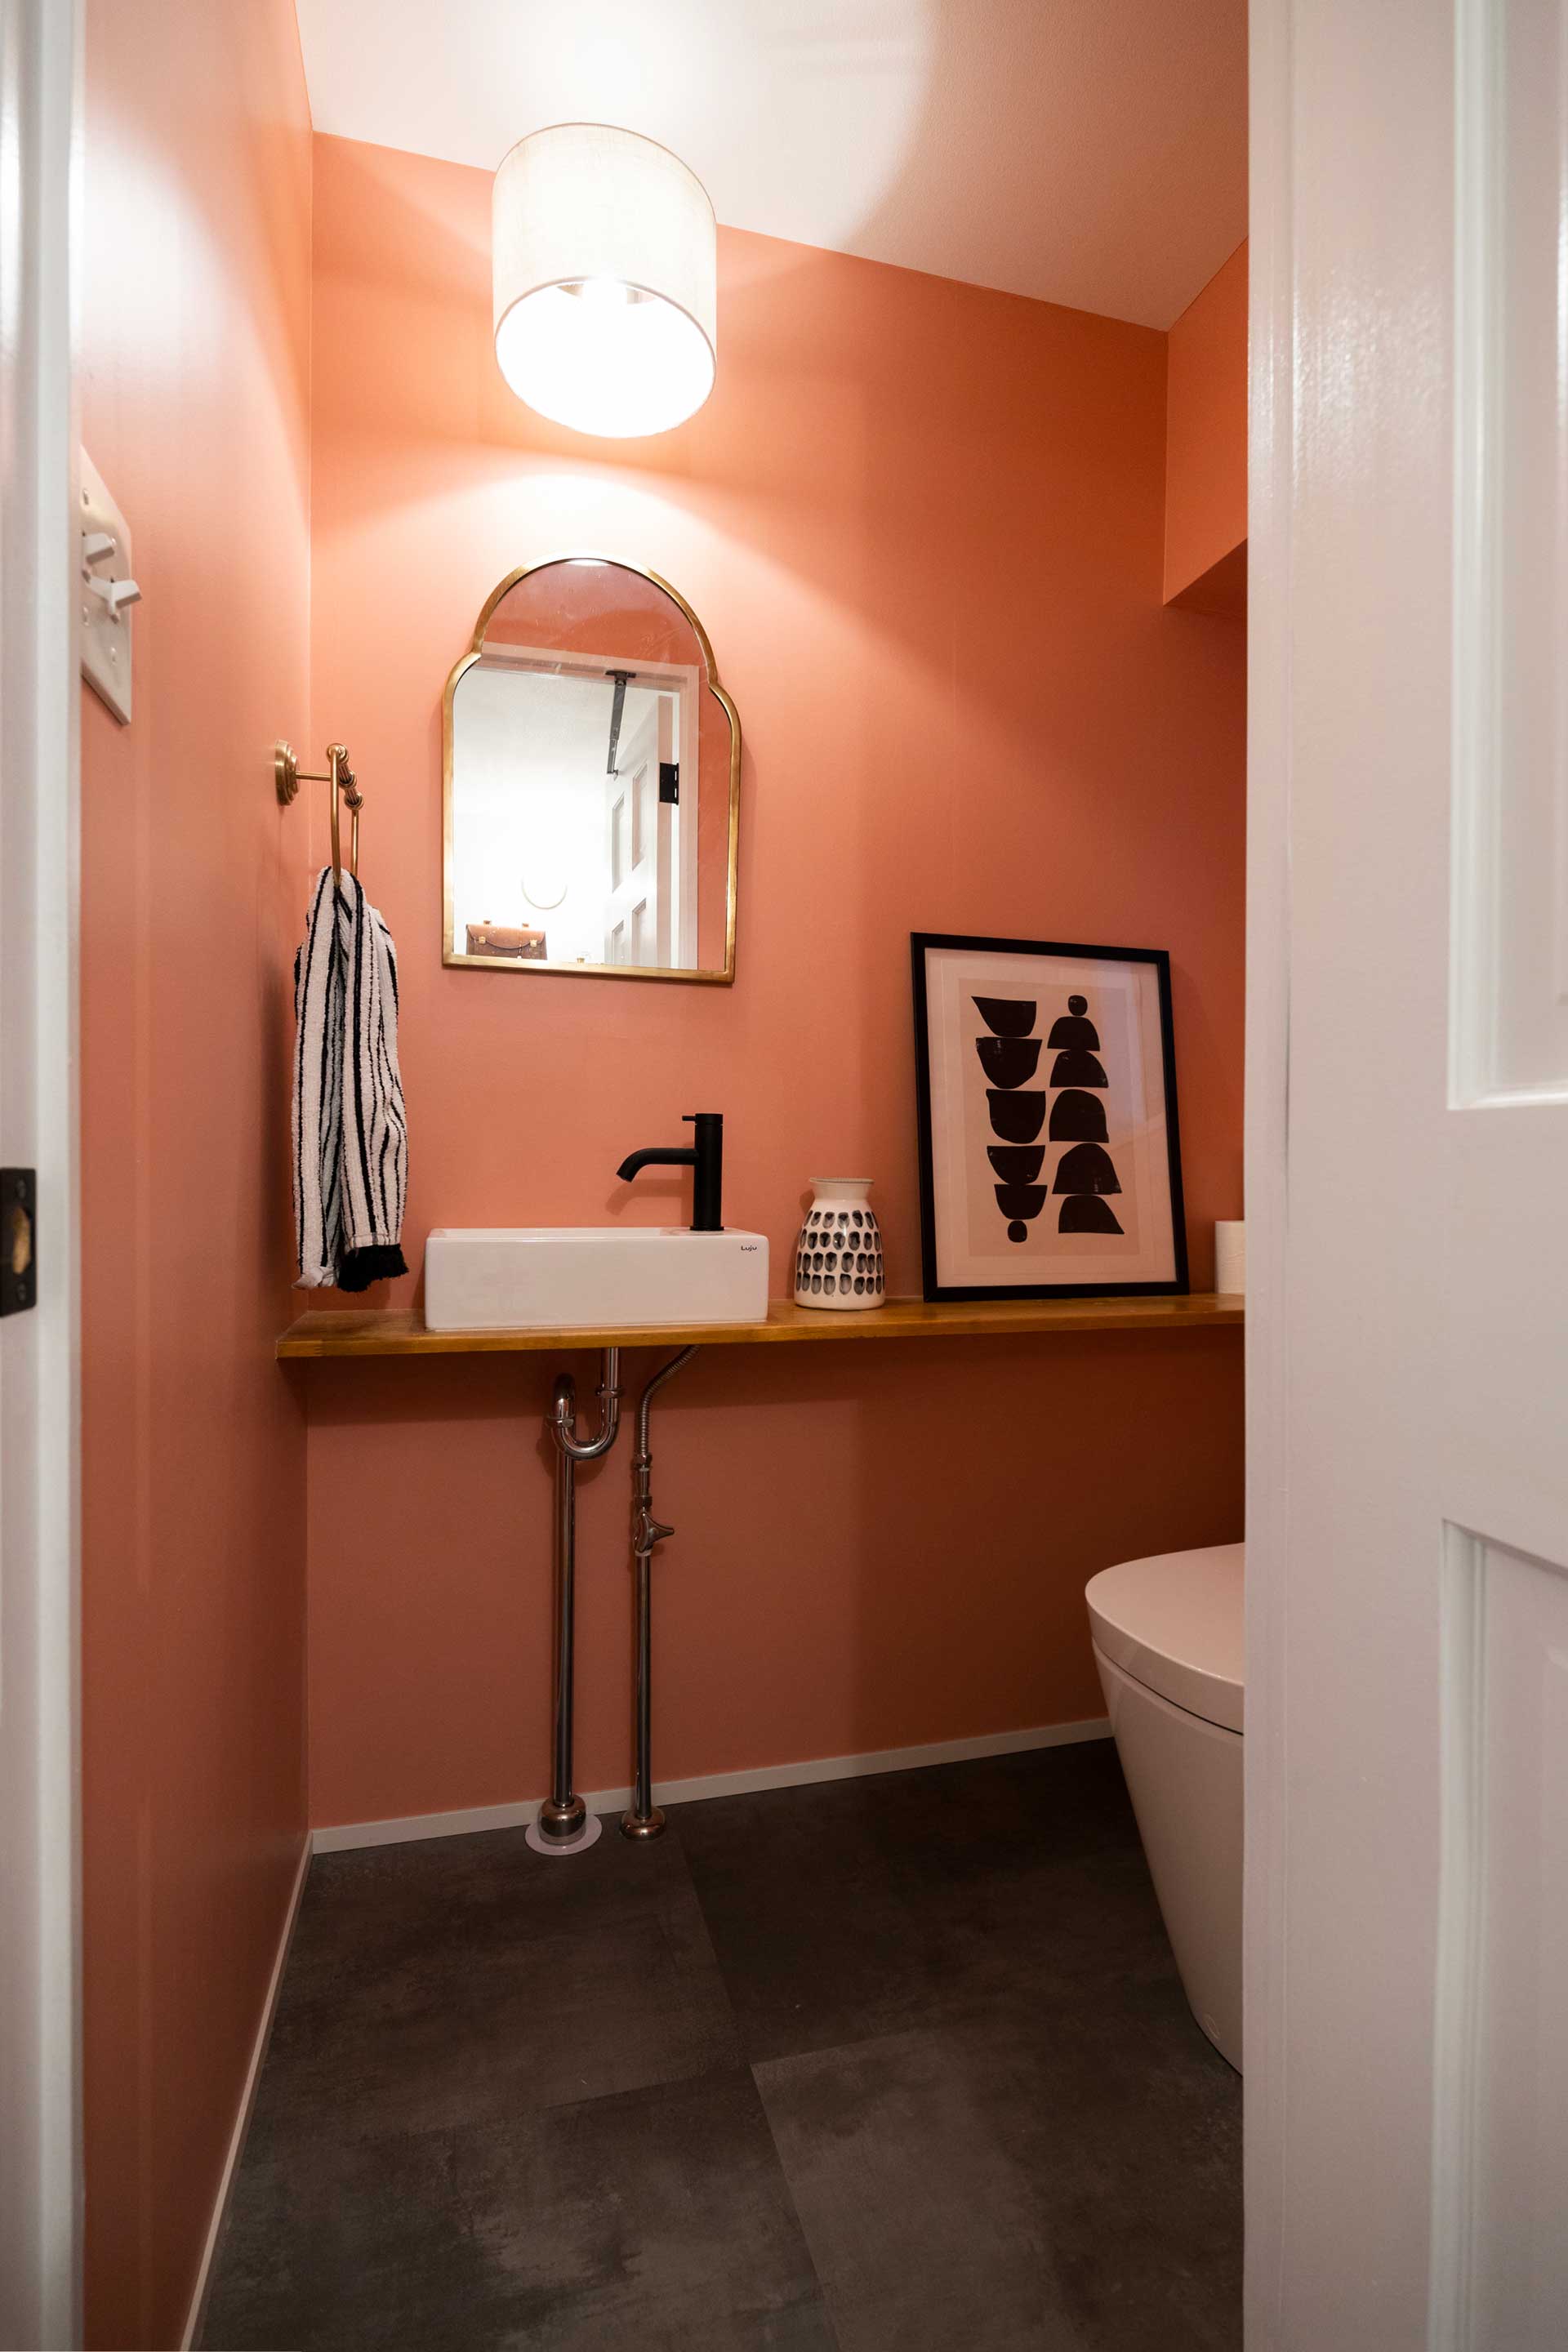 トイレの壁はサーモンピンクに塗った。黒とゴールドの小物で空間を締める。